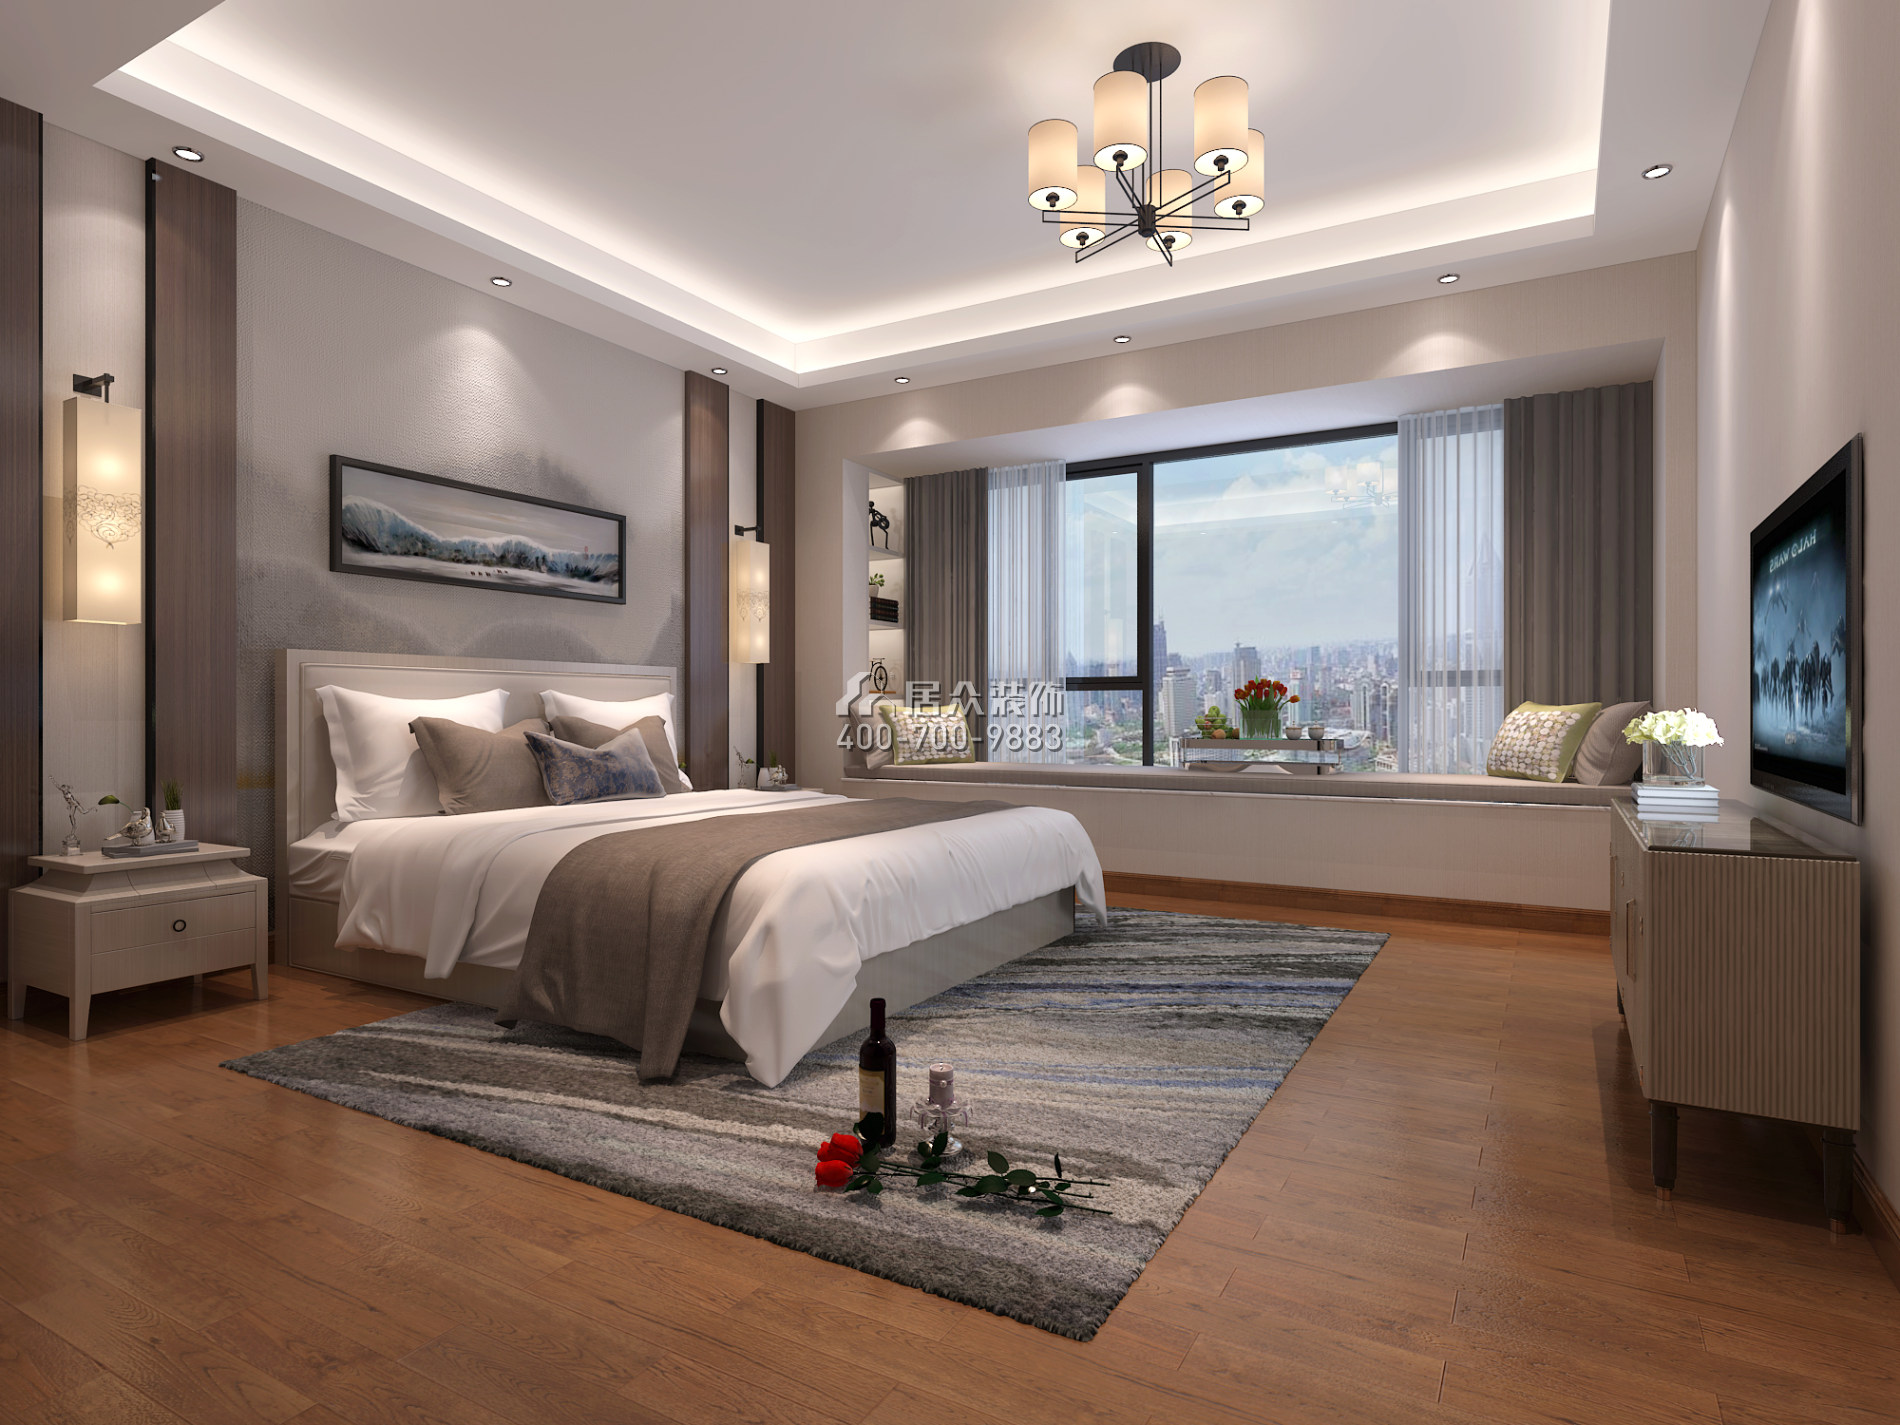 华侨城天鹅湖250平方米中式风格平层户型卧室装修效果图